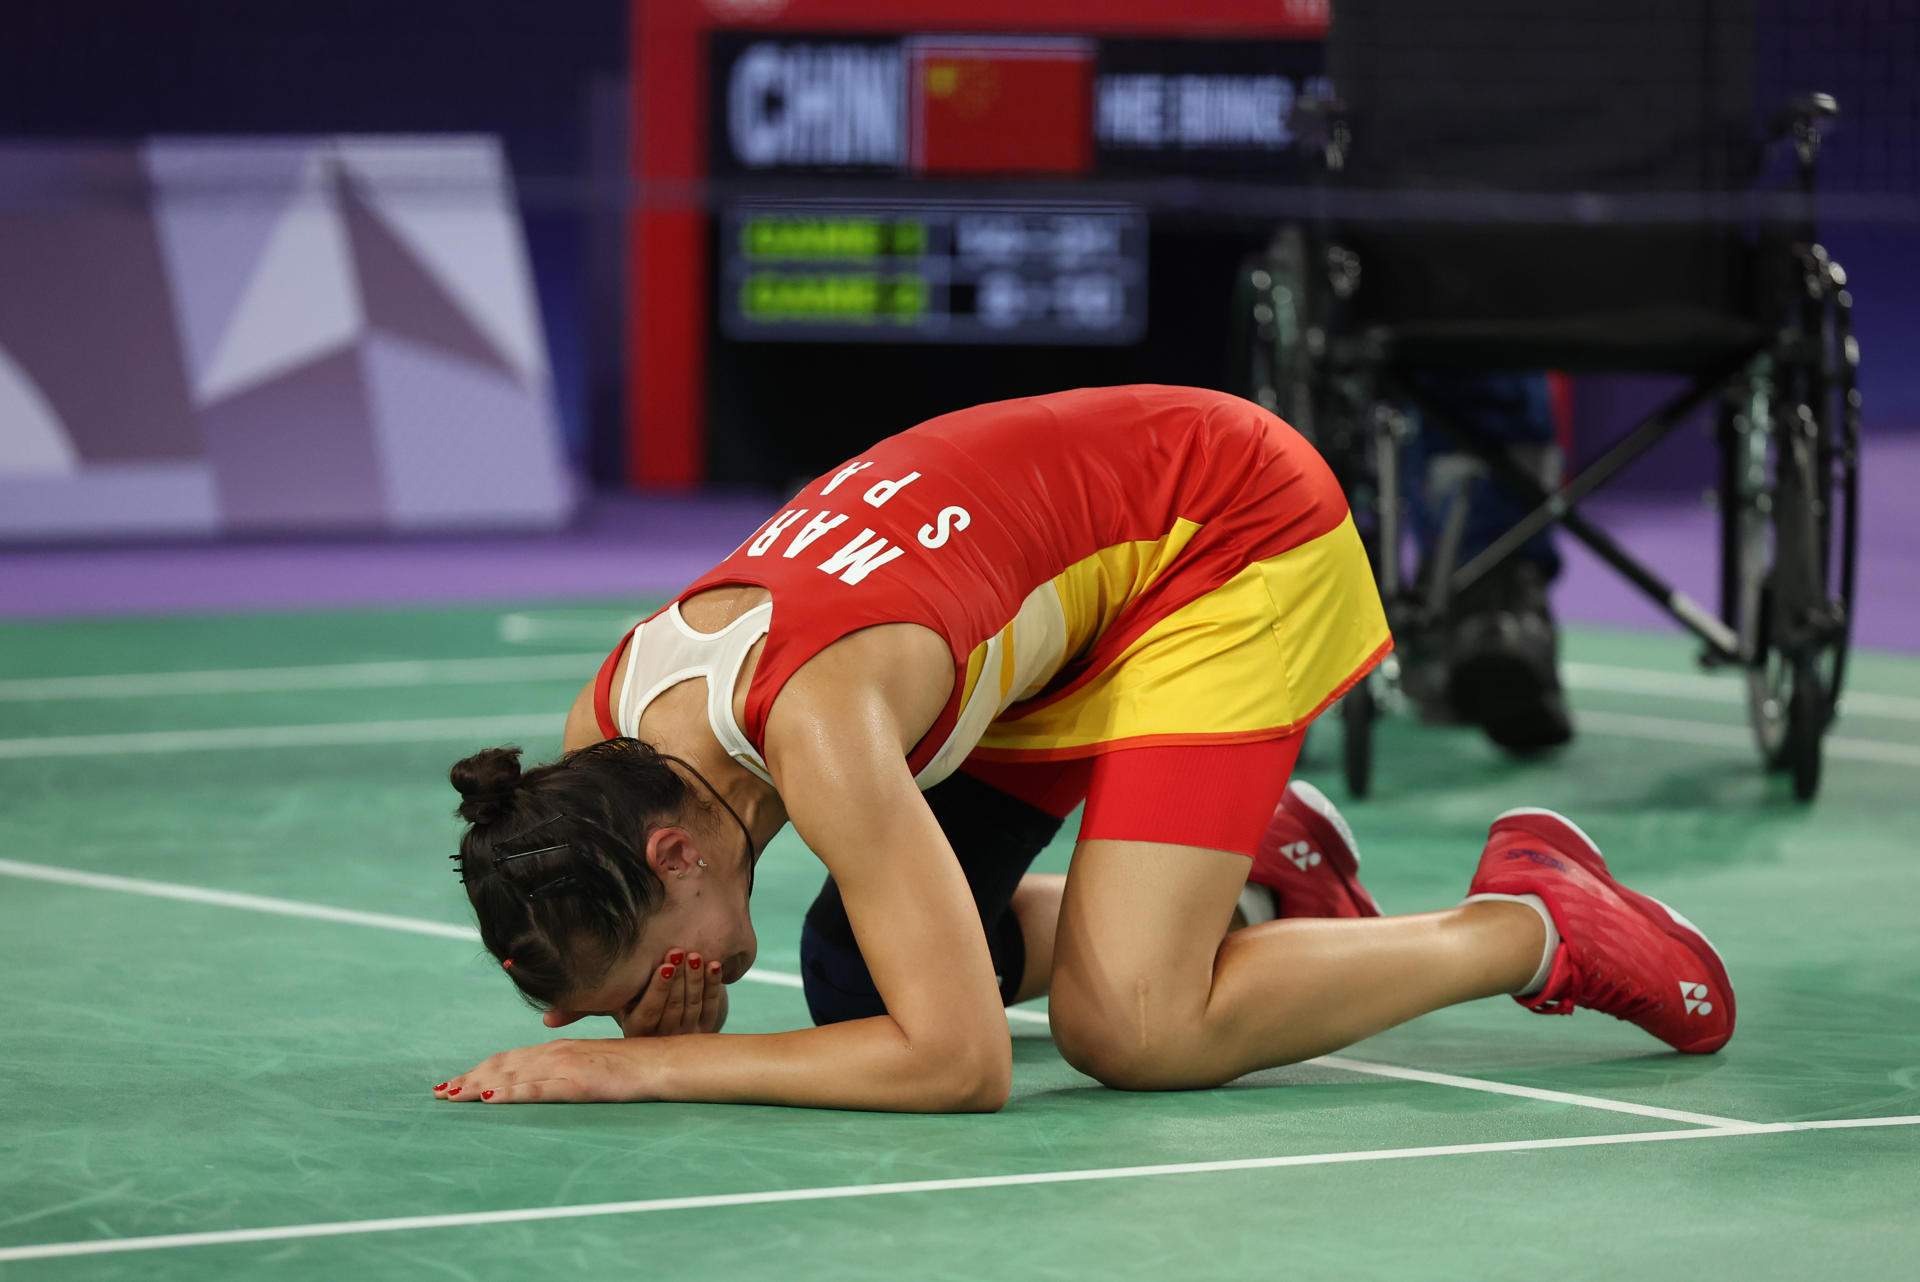 Carolina Marín ha d'abandonar la semifinal de bàdminton per lesió i diu adeu a les medalles a París 2024